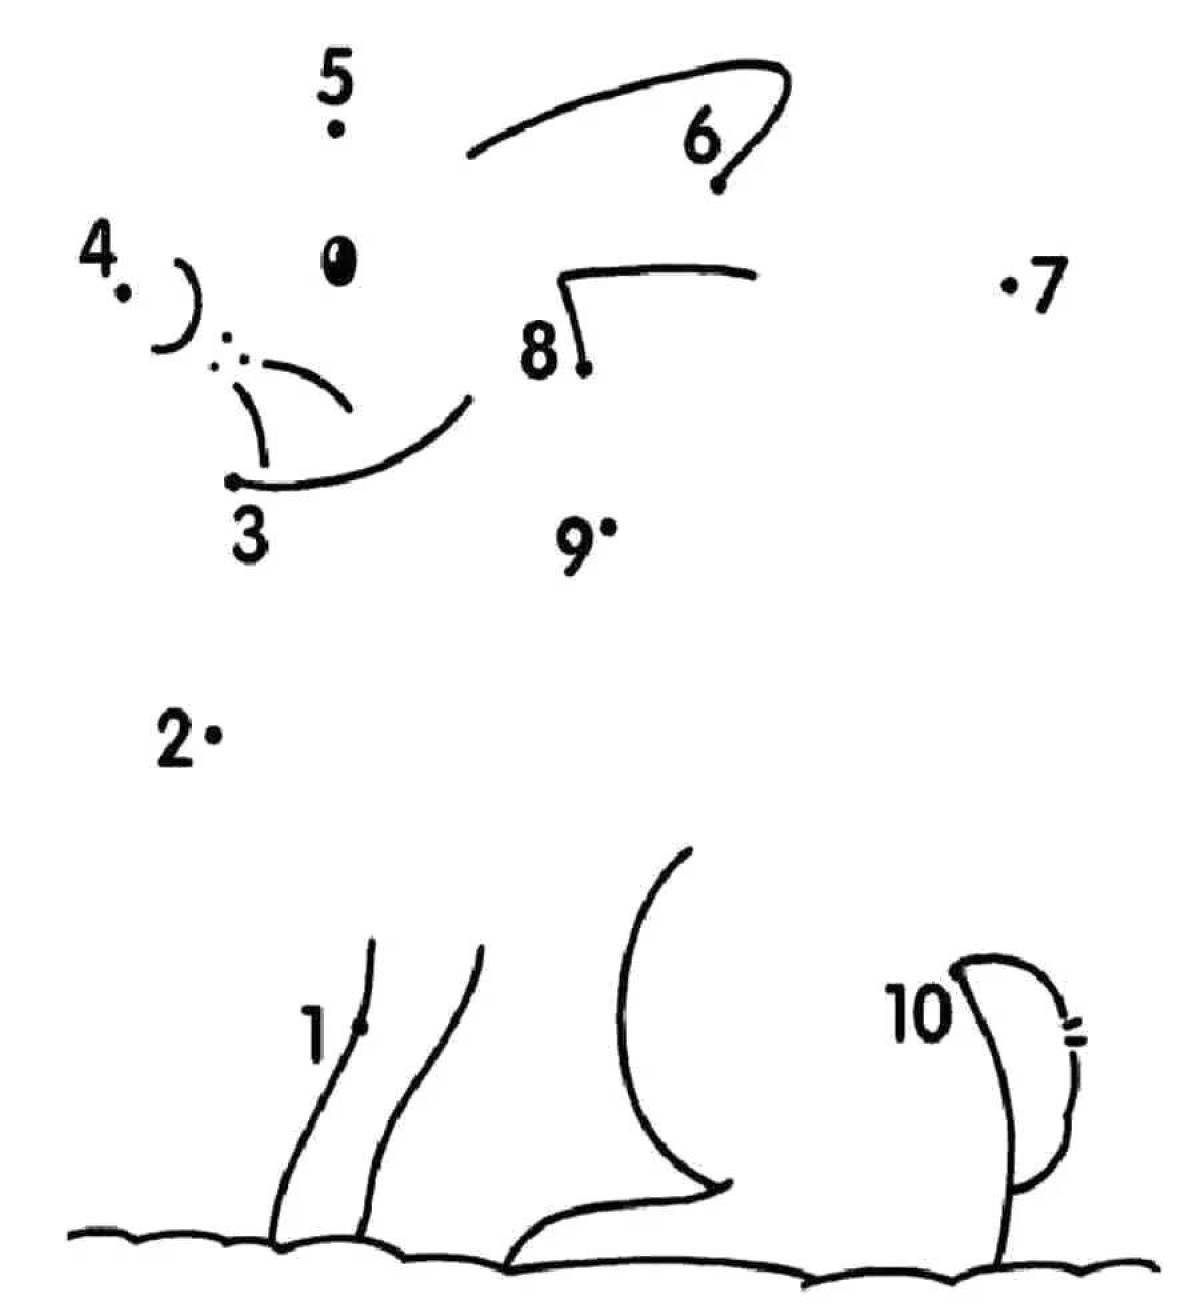 Рисунки после точки. Соединить точки по цифрам. Рисунки по точкам. Обводить по цифрам до 10. Соединить точки по цифрам до 10.